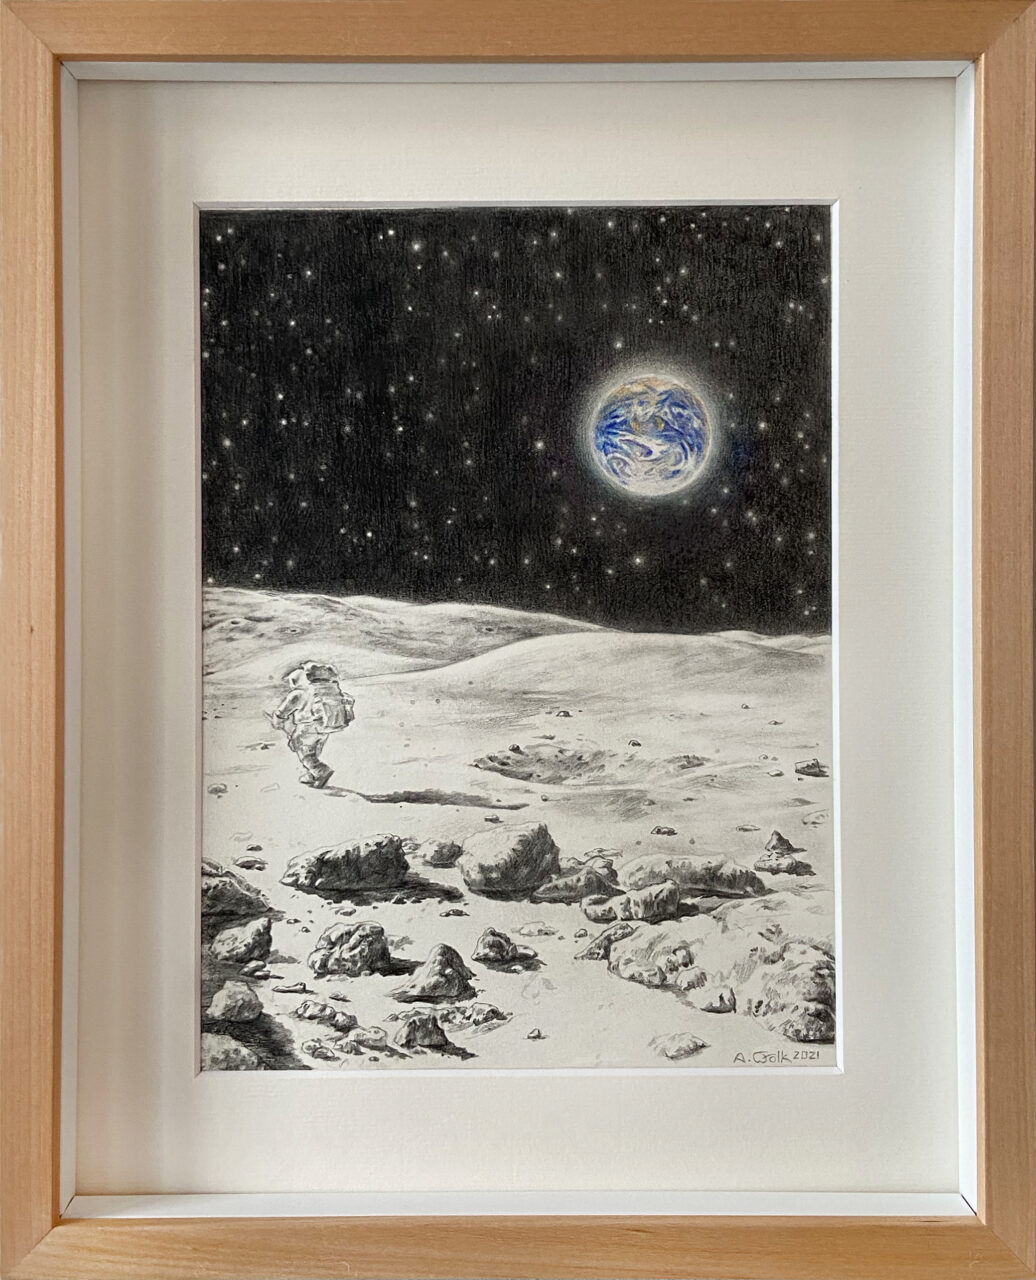 Le Voyage dans la Lune, 2021, 23 x 17 cm, Pencil and Crayon on paper,  420 Euro